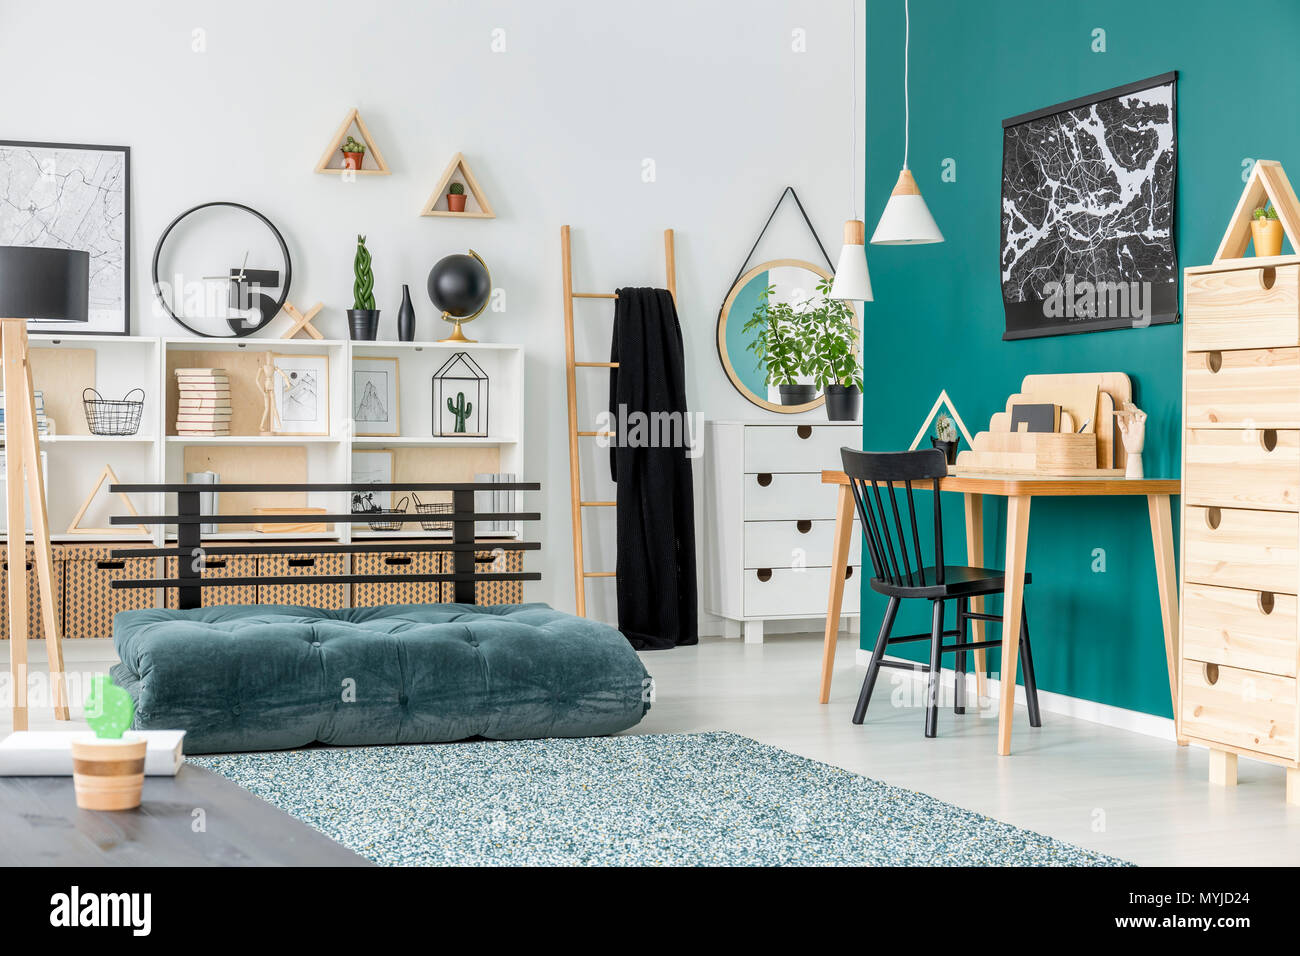 Silla negra en un mostrador de madera en la habitación de niño interior con colchón verde alfombra cerca Foto de stock